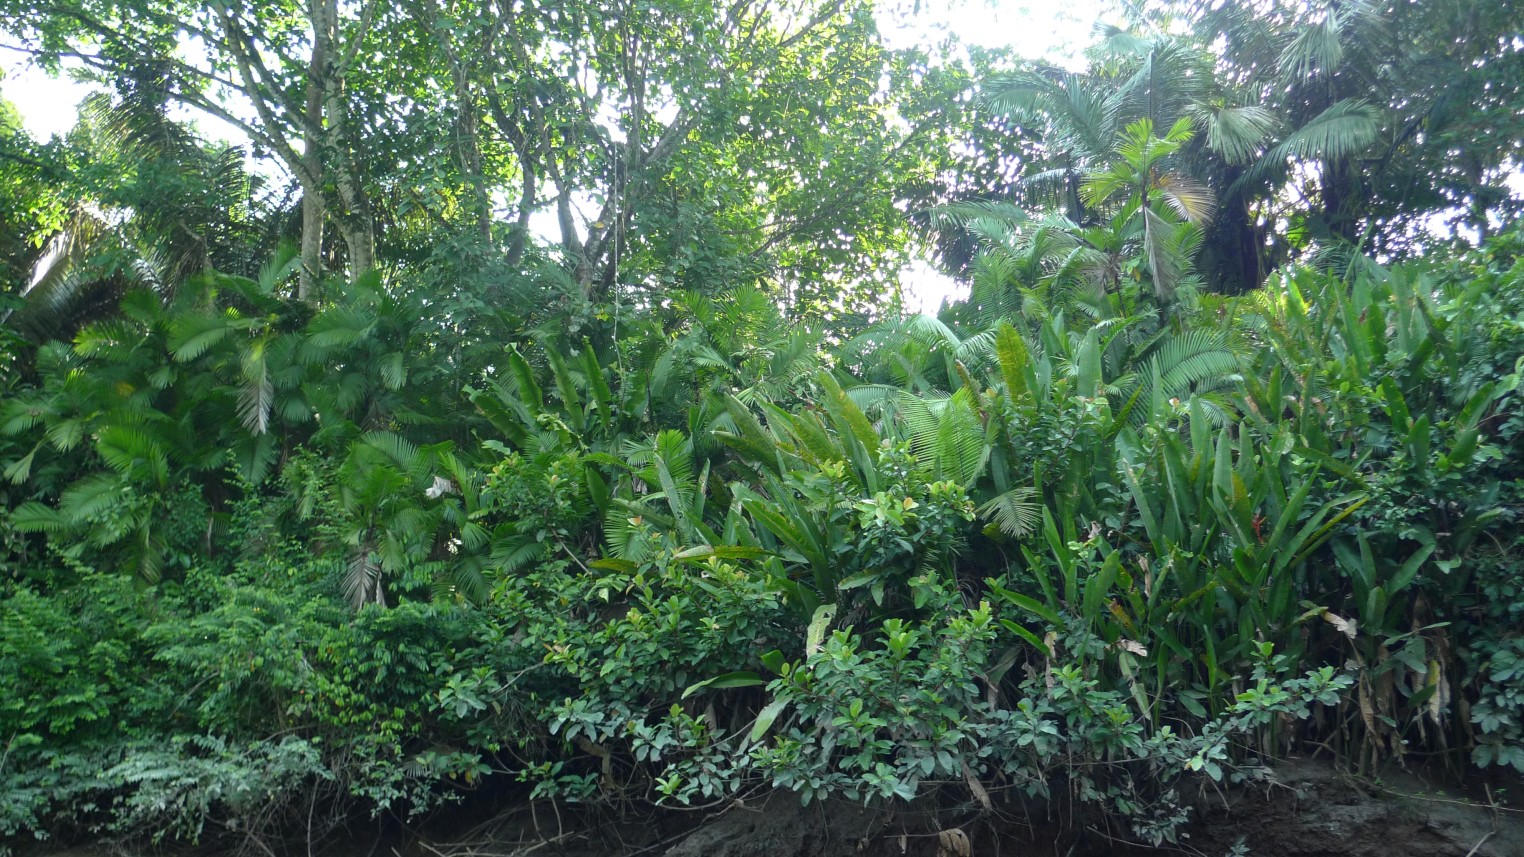 P1010637 - Amazon Jungle Ferns